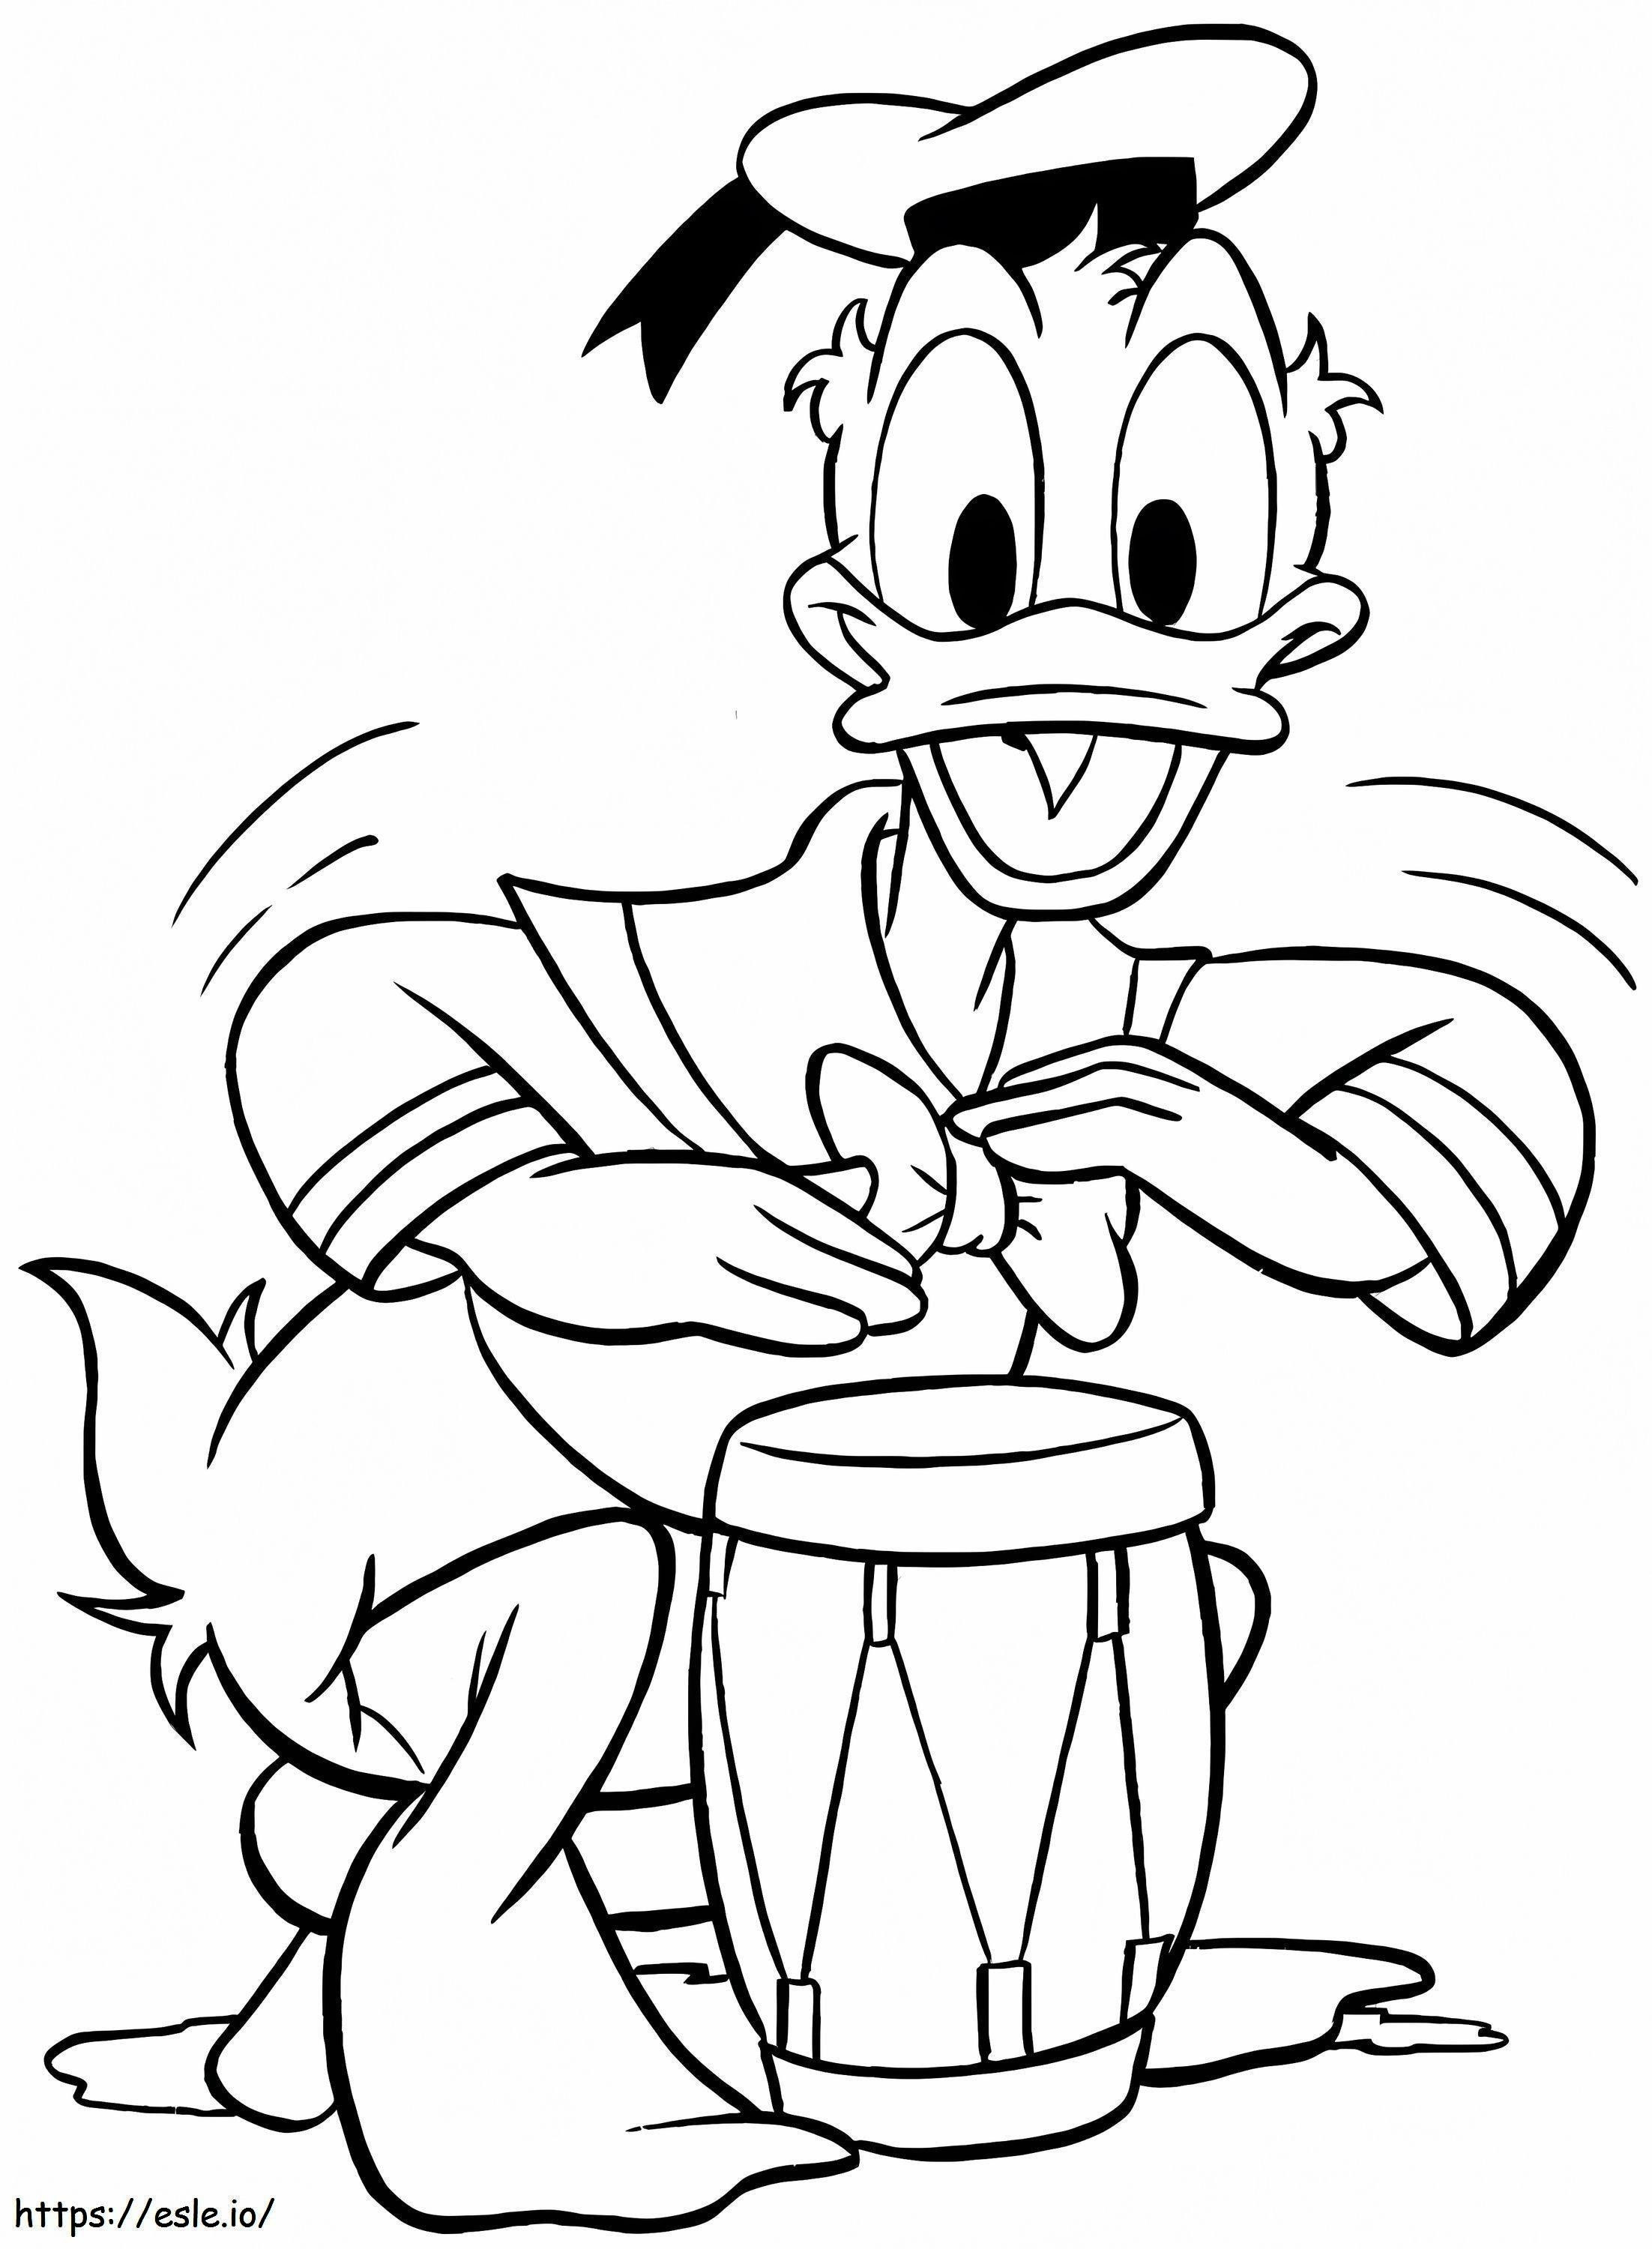 Donald tocando el tambor para colorear